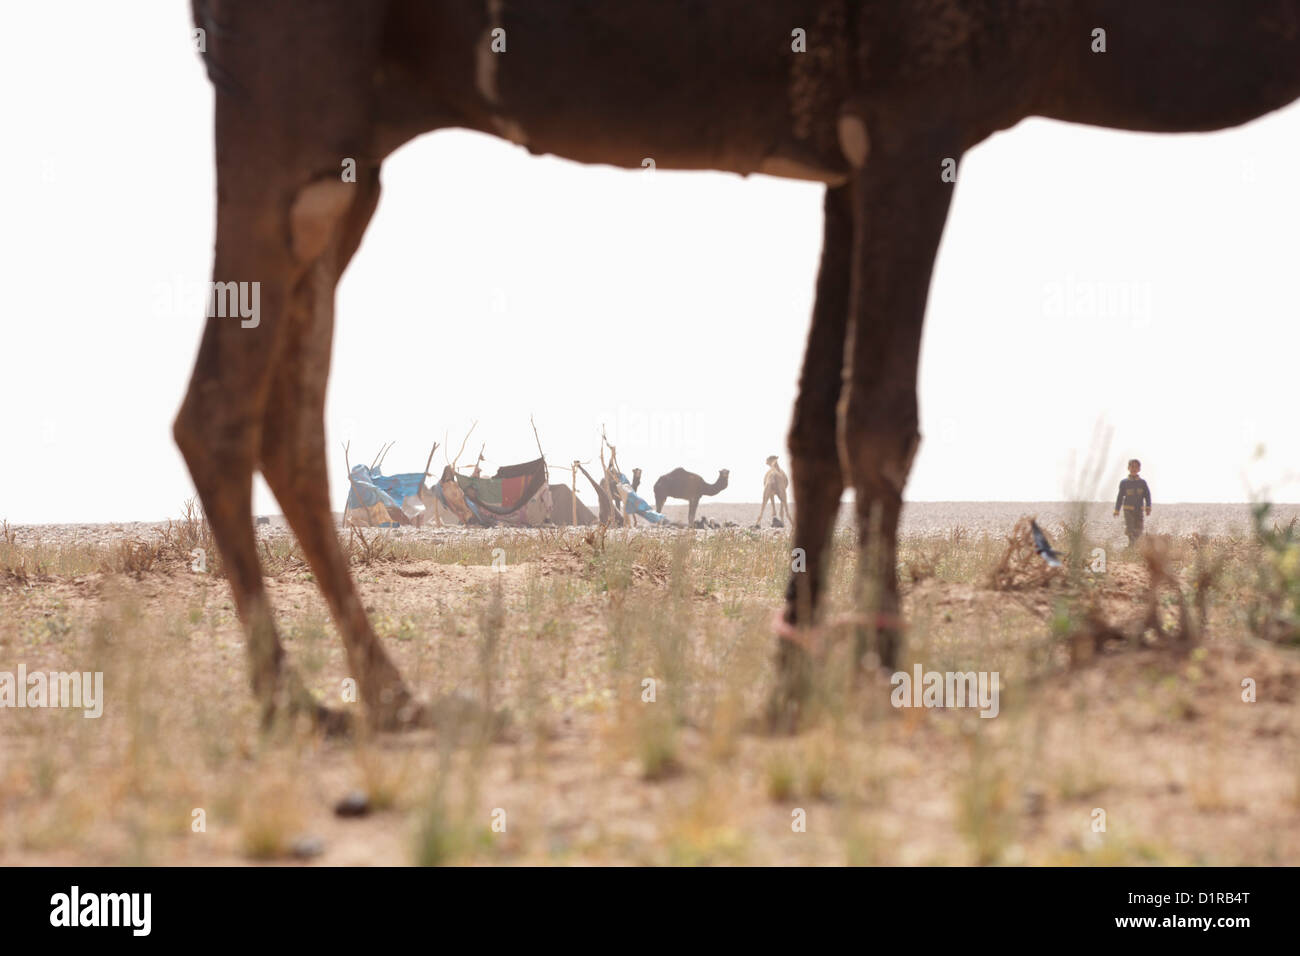 Le Maroc, M'Hamid, camp nomade et des chameaux. Banque D'Images